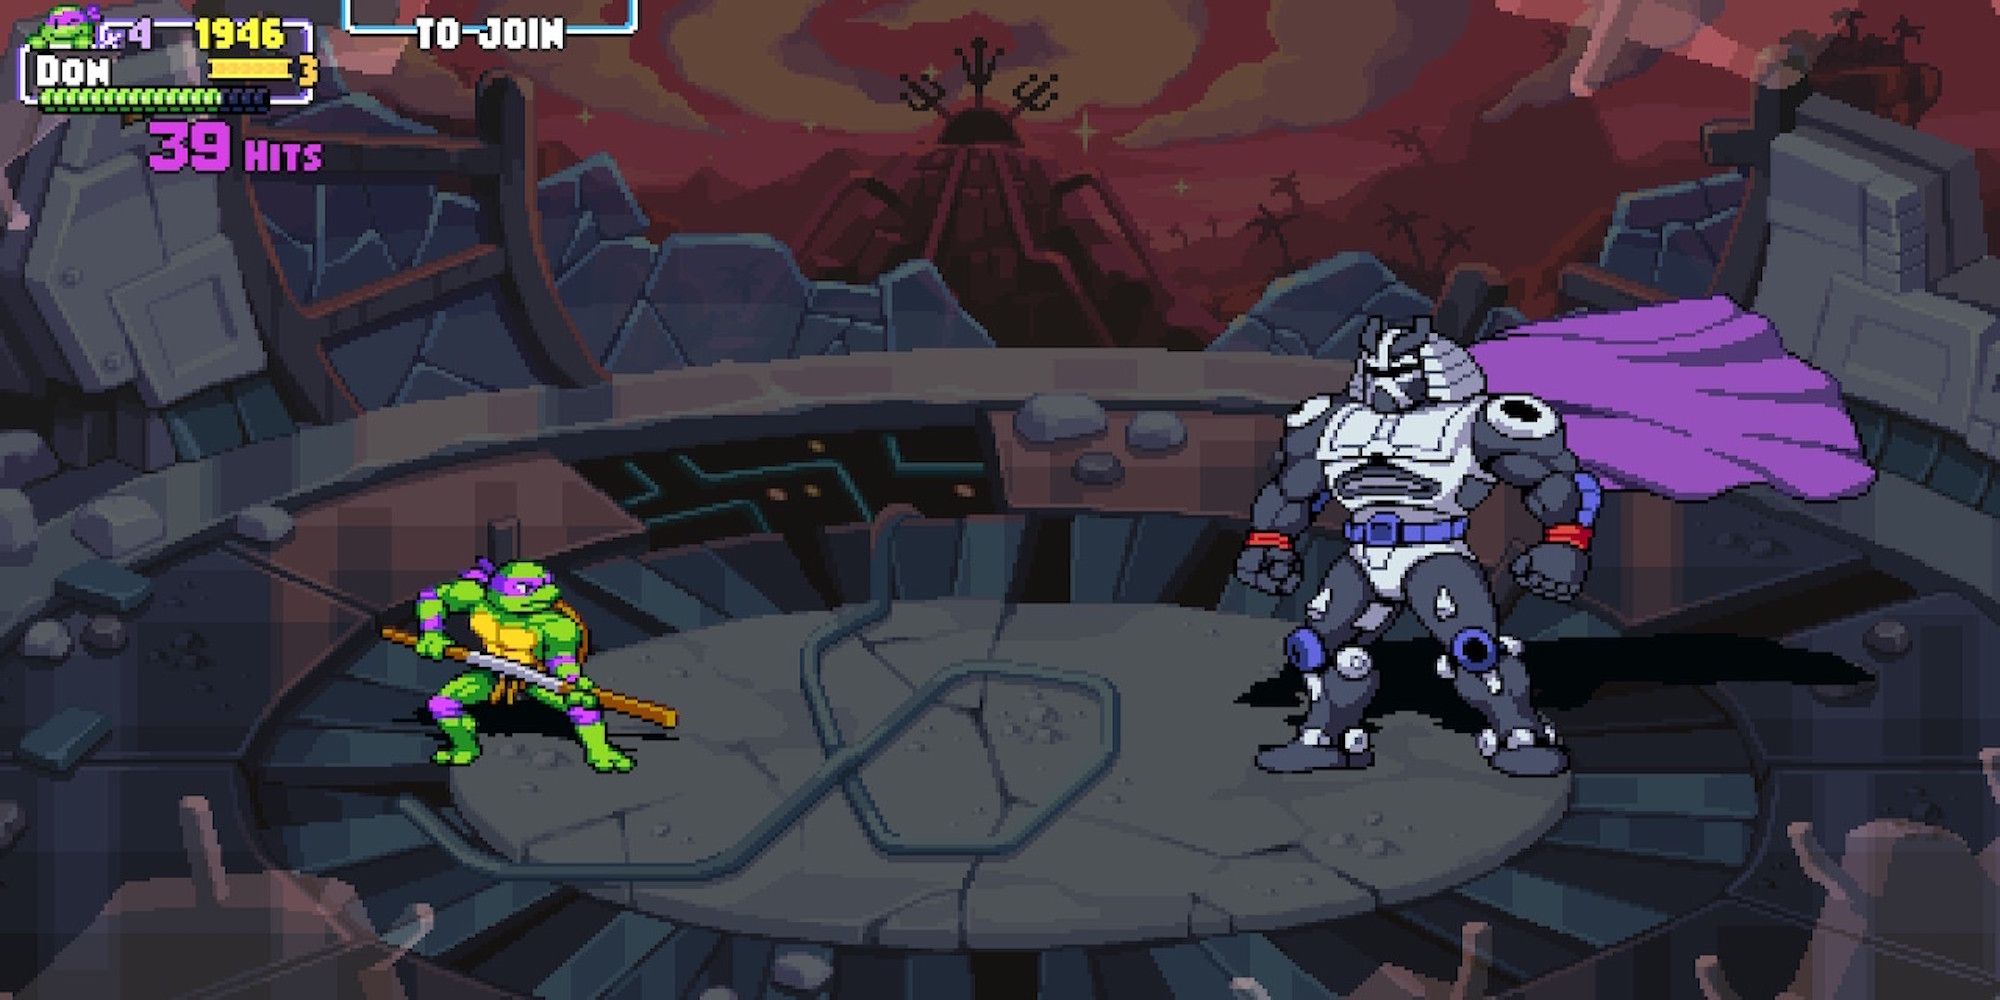 Fighting a boss in Teenage Mutant Ninja Turtles Shredder's Revenge